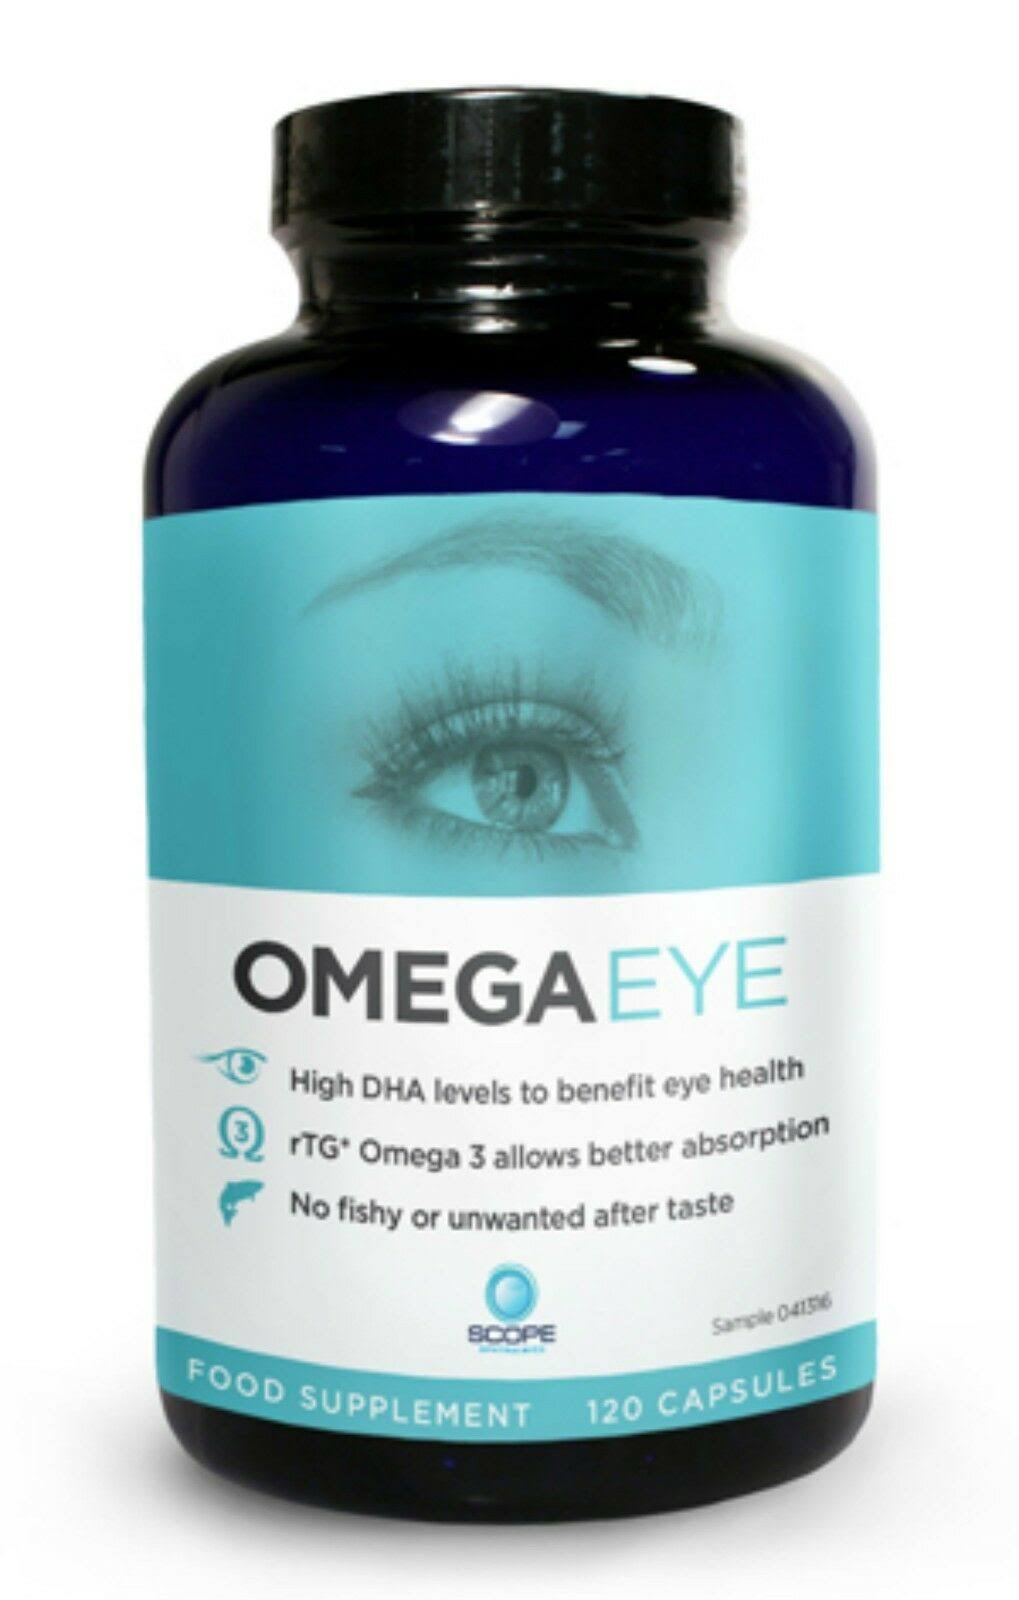 Omega Eye Capsules